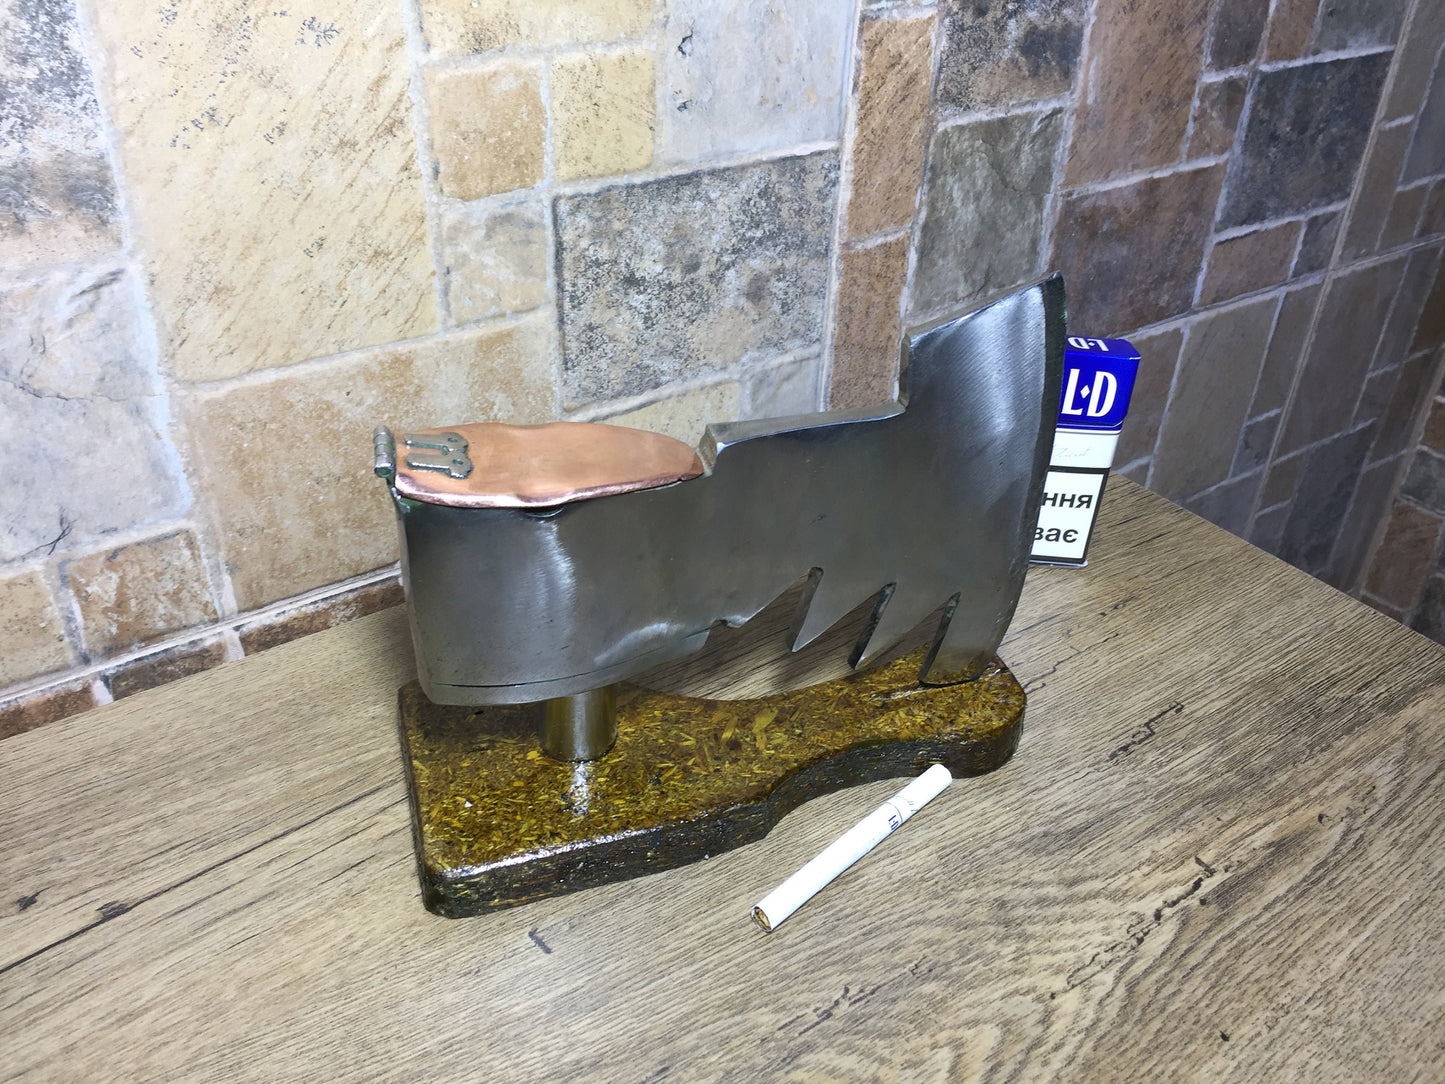 Ash tray with copper cover, metal ashtray, viking axe, medieval axe, ashtray, iron gift, iron anniversary gift, iron gift for men,iron gifts